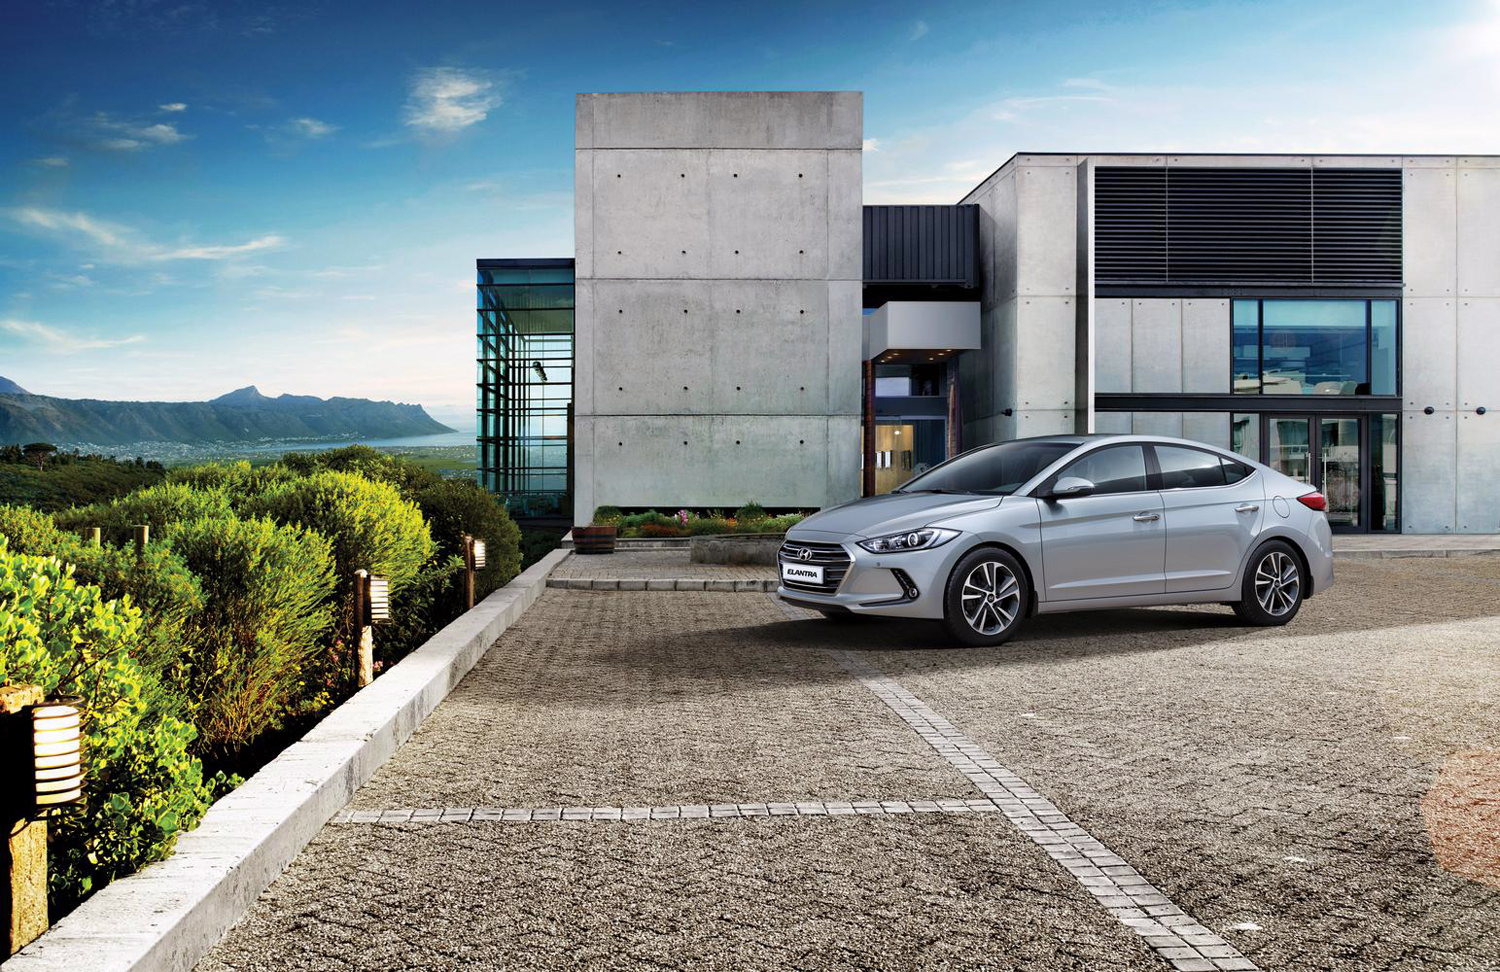 Hyundai - rekordowa sprzedaż Tucsona i Elantry